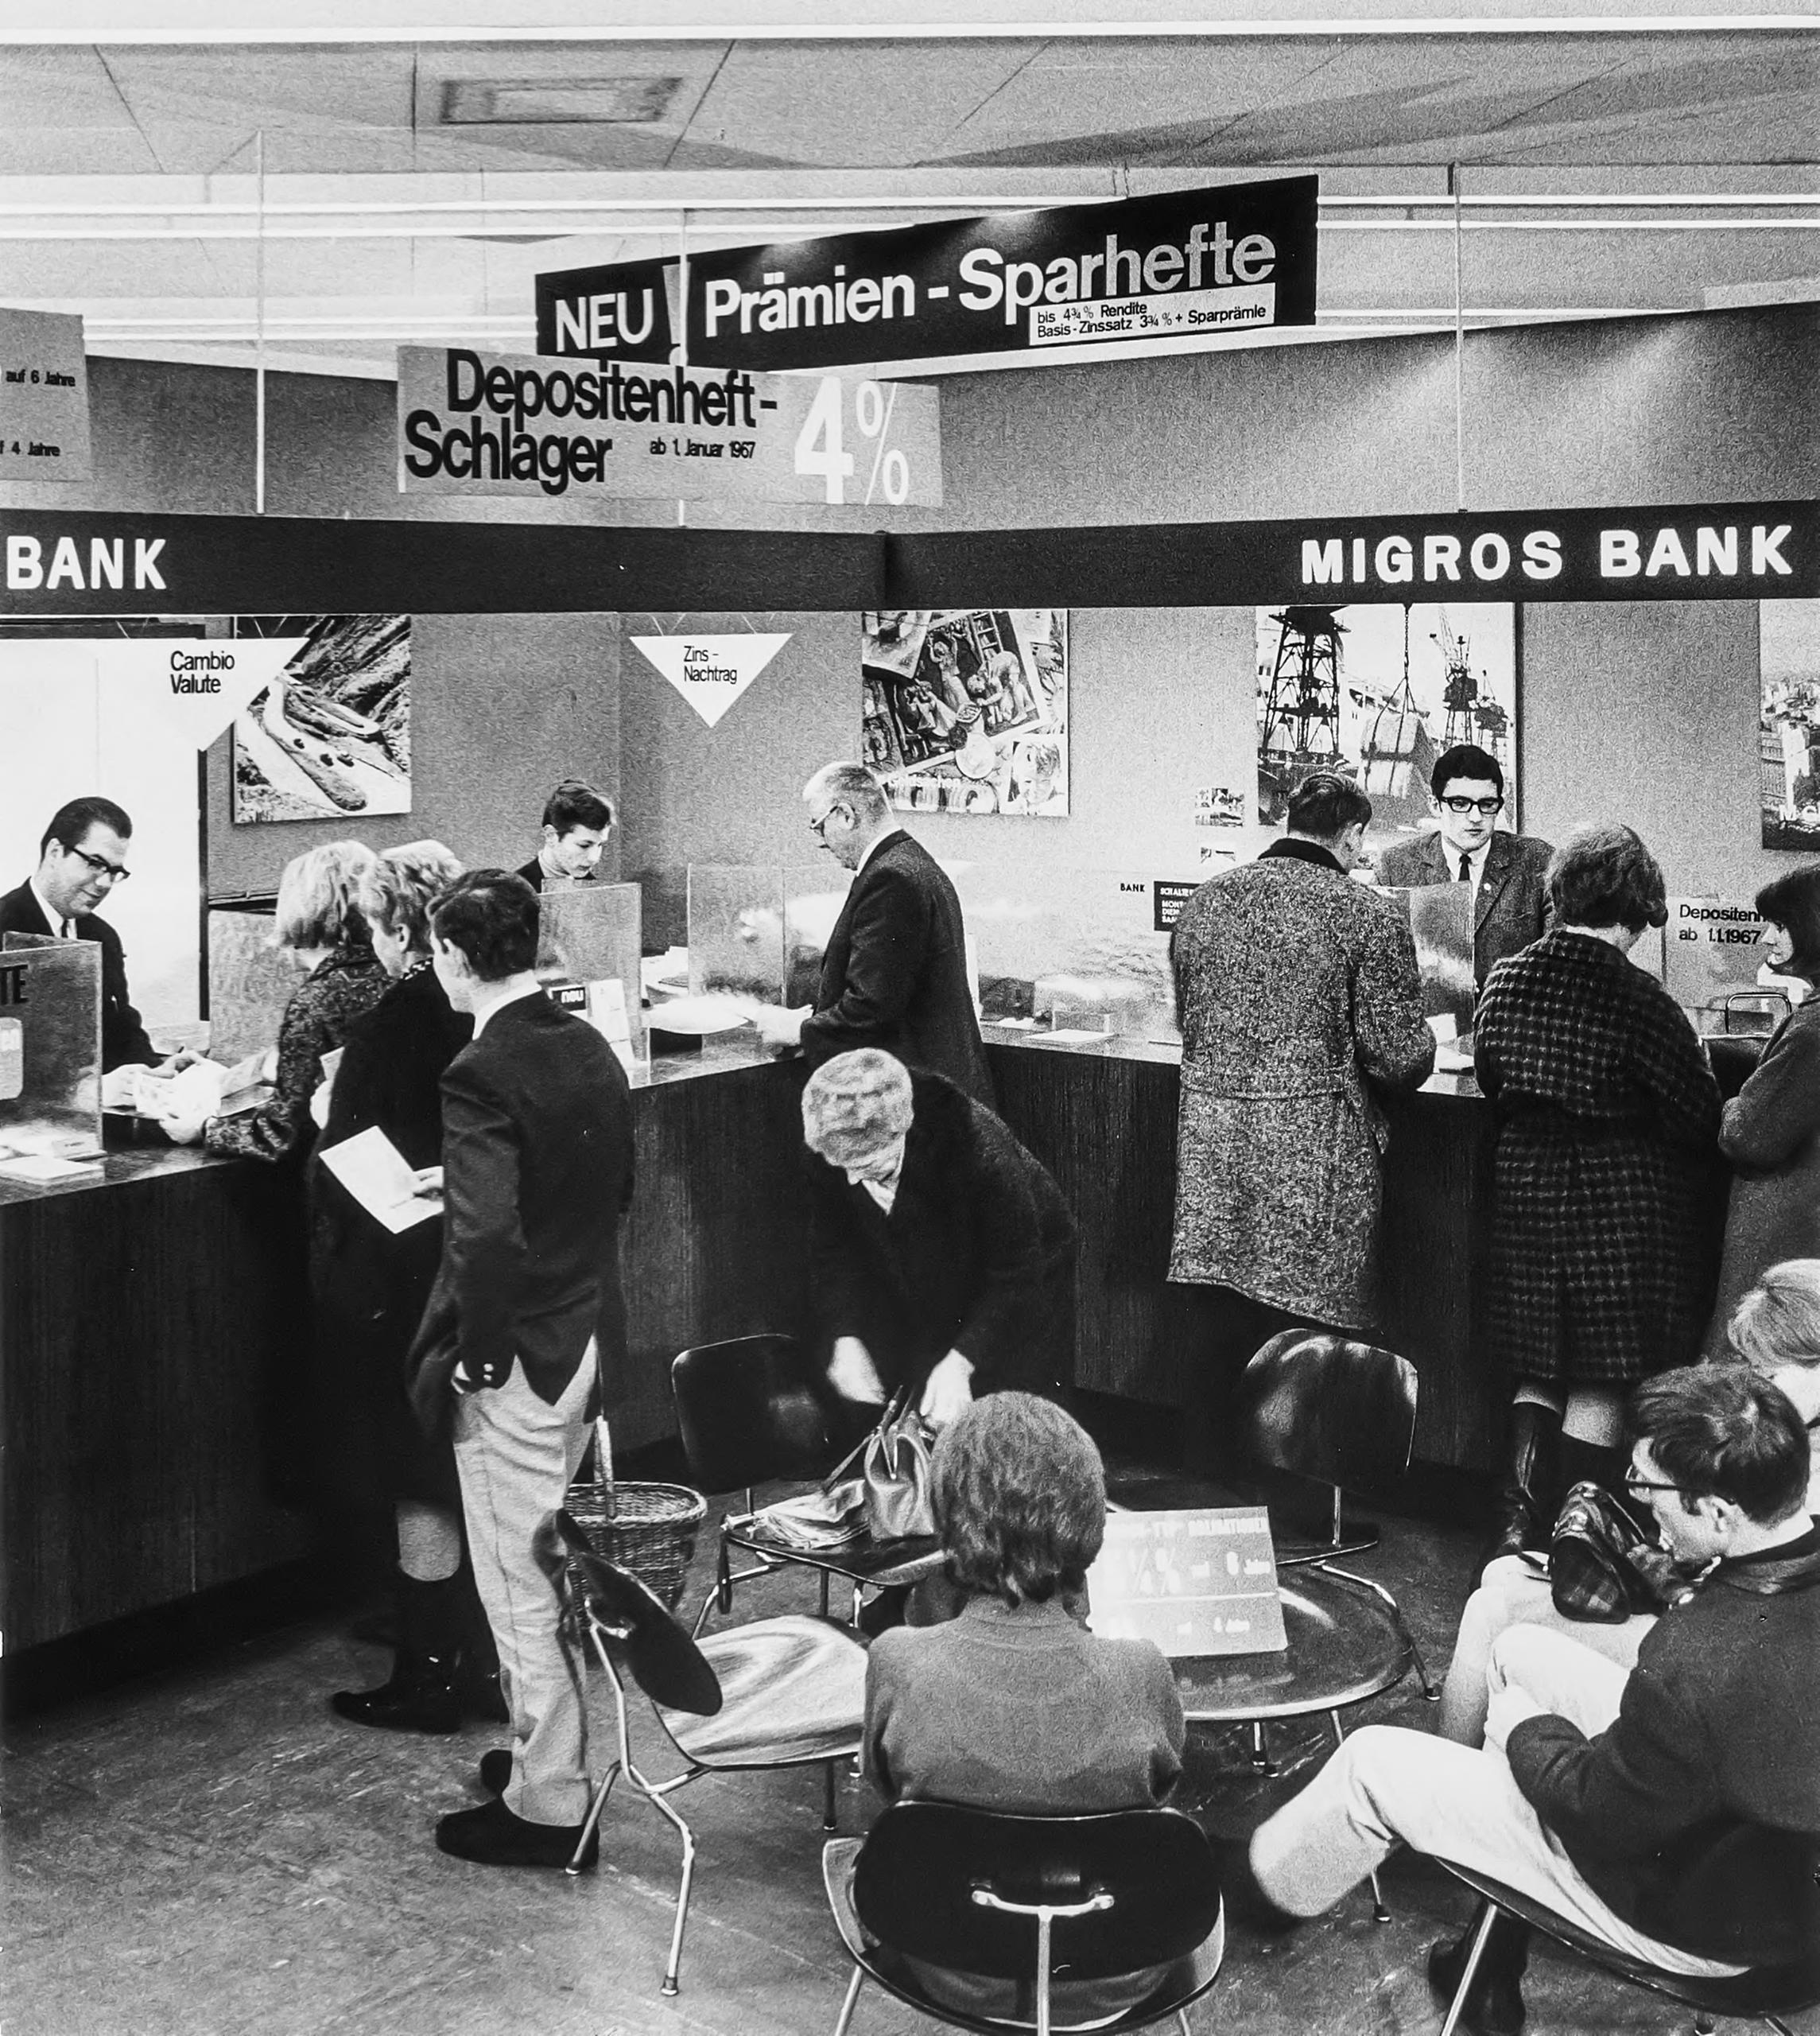 El banco Migros en 1961, clientes esperando a ser atendidos